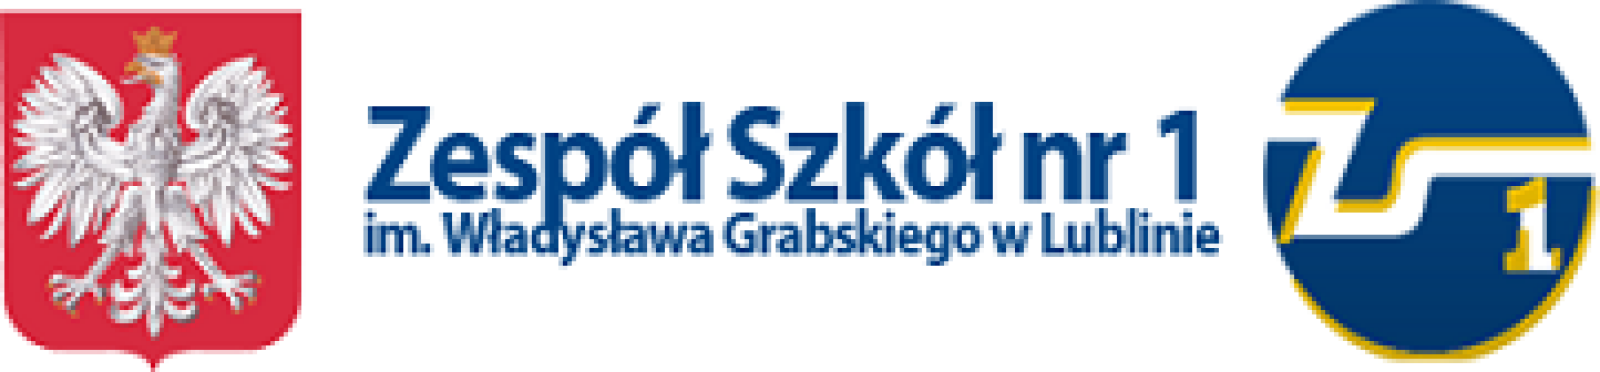 Zespół Szkół Nr 1 im. Władysława Grabskiego w Lublinie